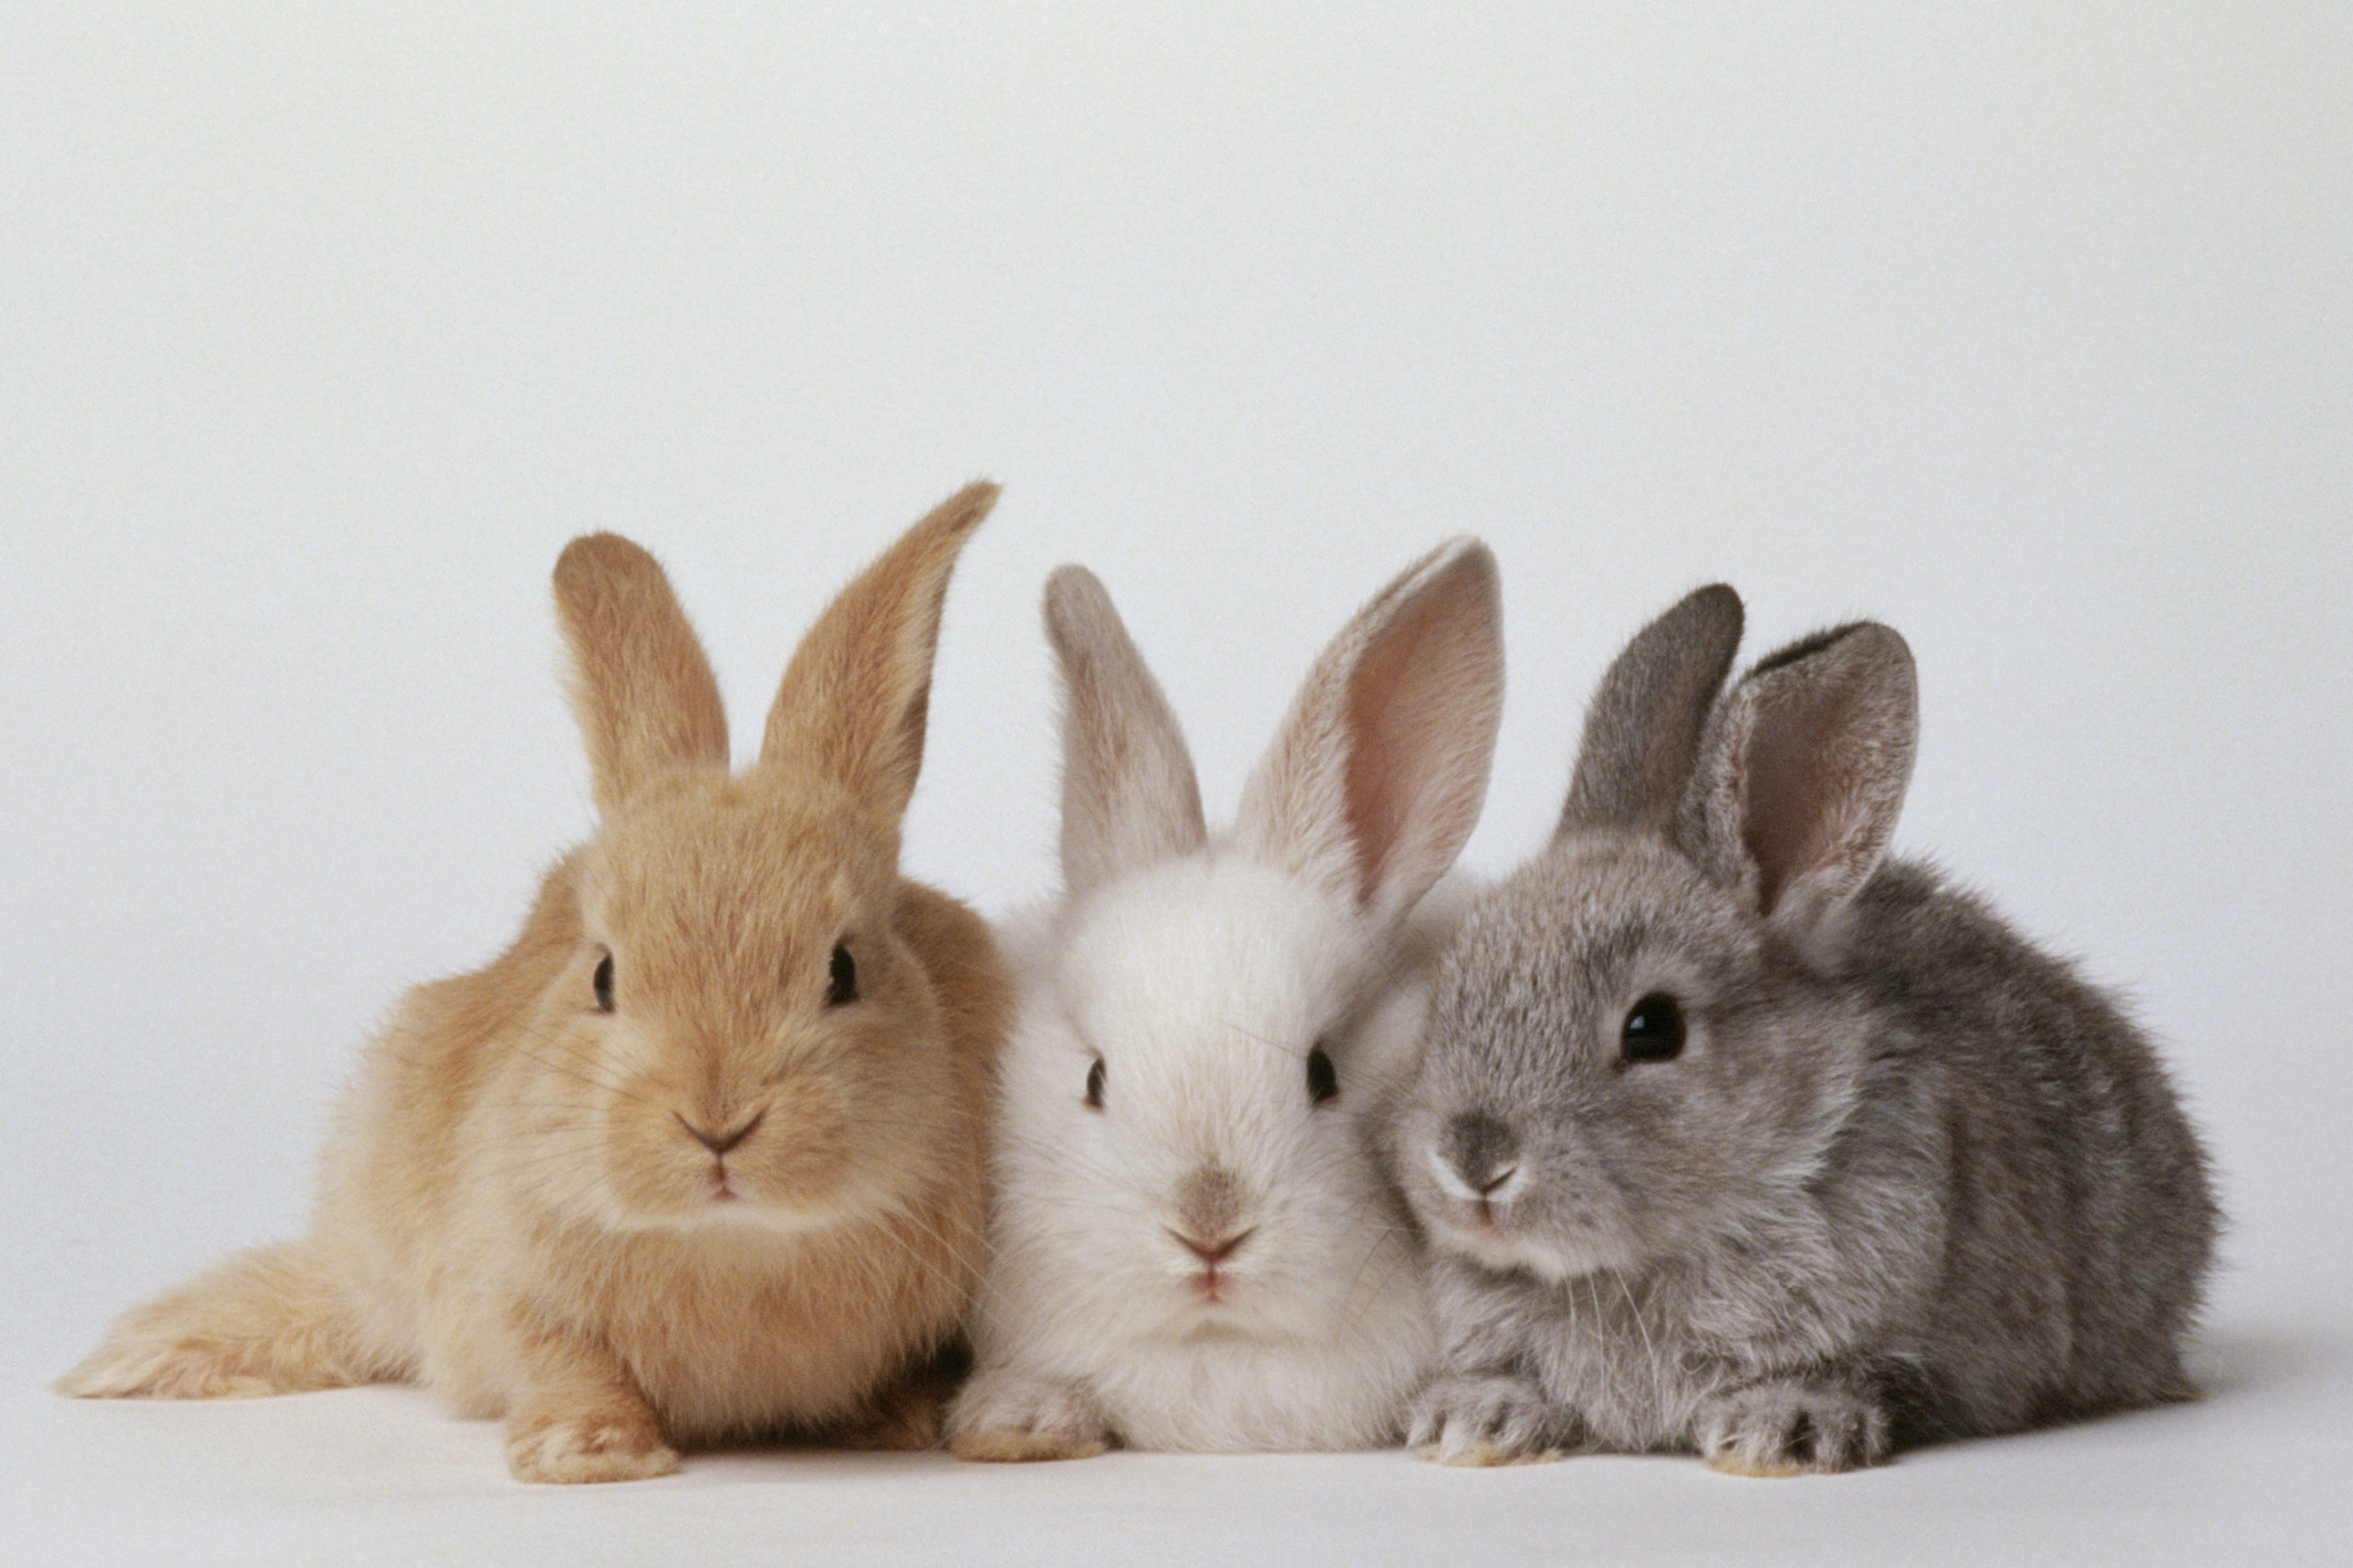 ‎روش آموزش دستشویی به خرگوش ها که نگهداری آنها را راحت تر می کند